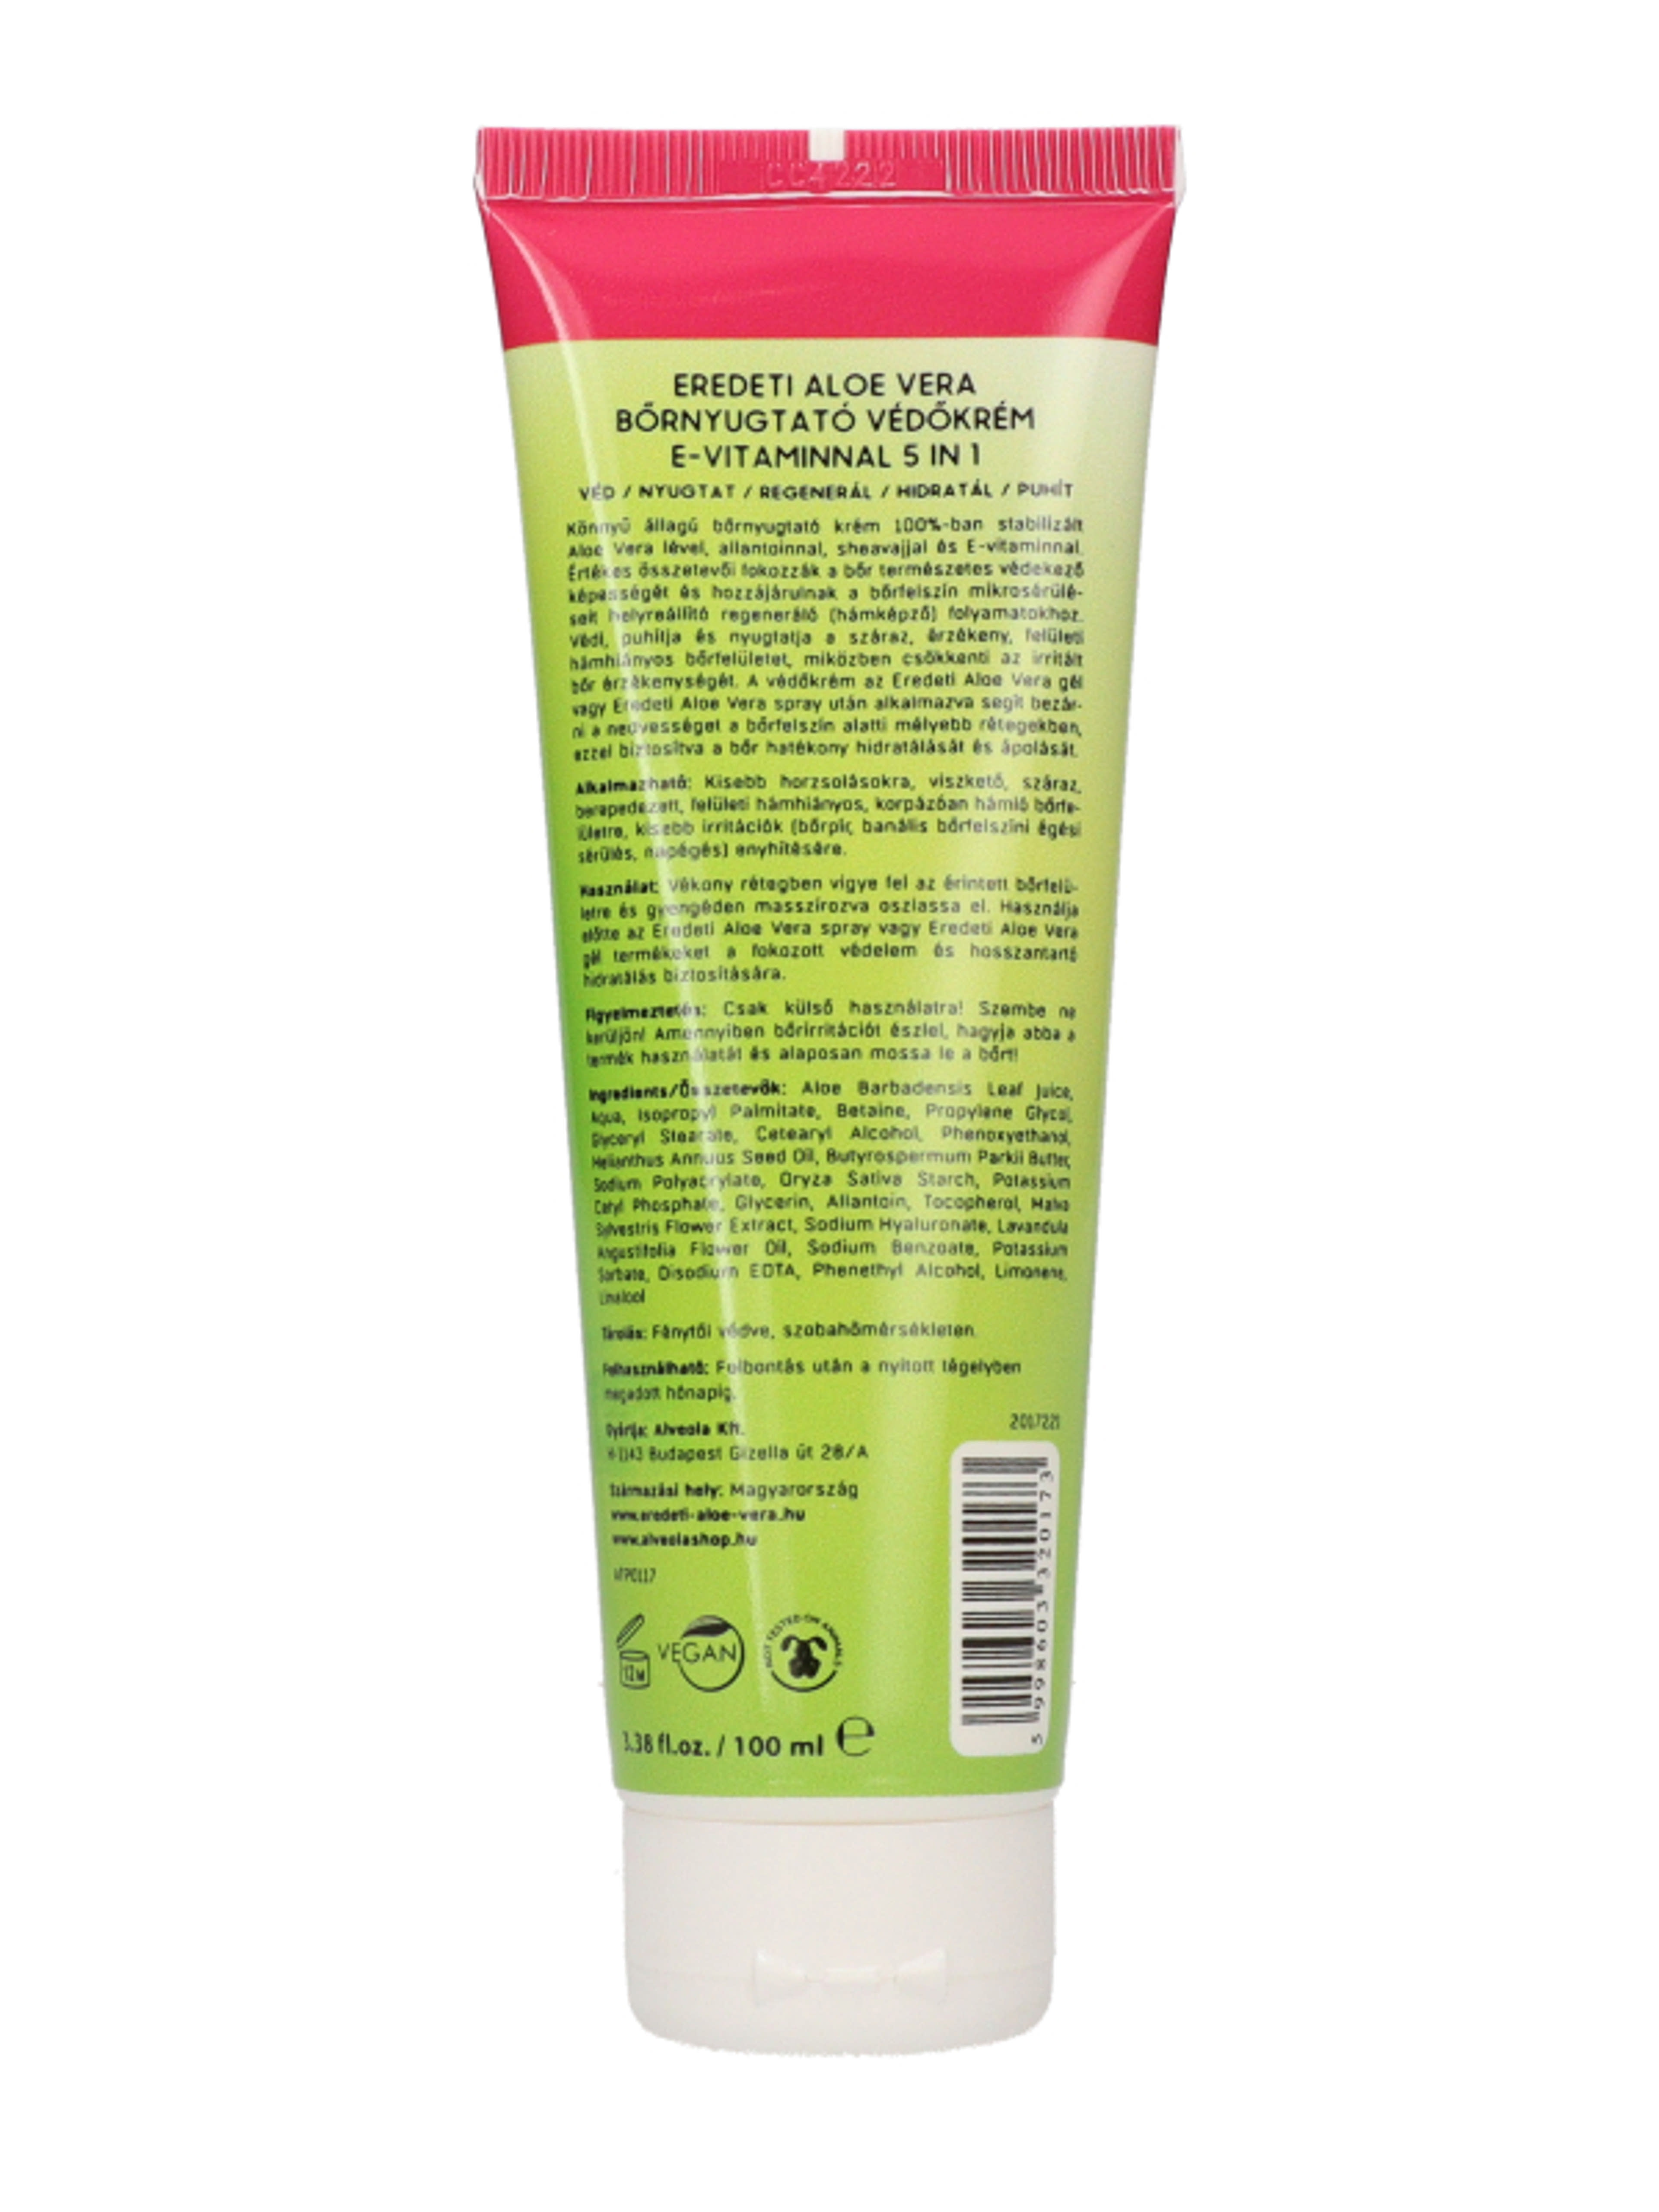 Eredeti Aloe Vera 5 in 1 bőrnyugtató védőkrém  - 100 ml-4